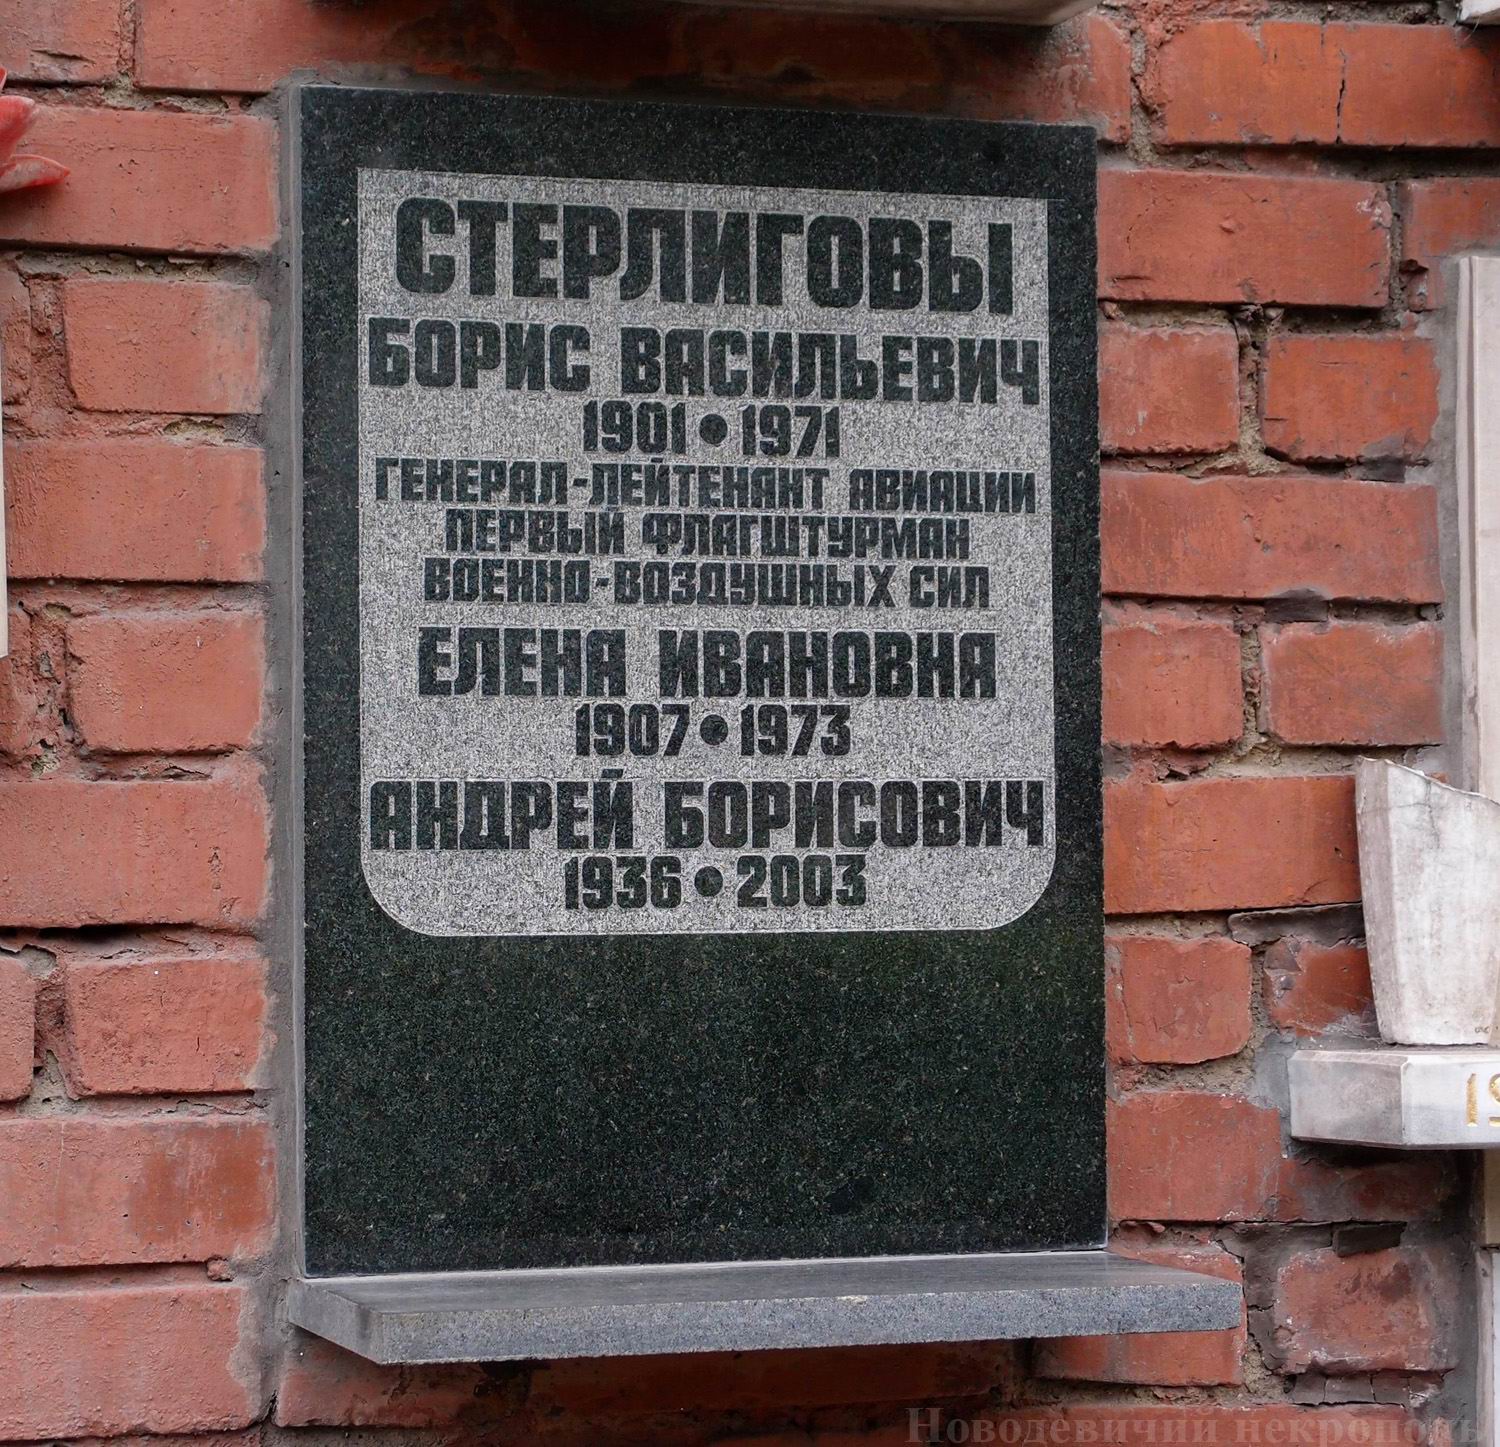 Плита на нише Стерлигова Б.В. (1901-1971), на Новодевичьем кладбище (колумбарий [135]-84-3).